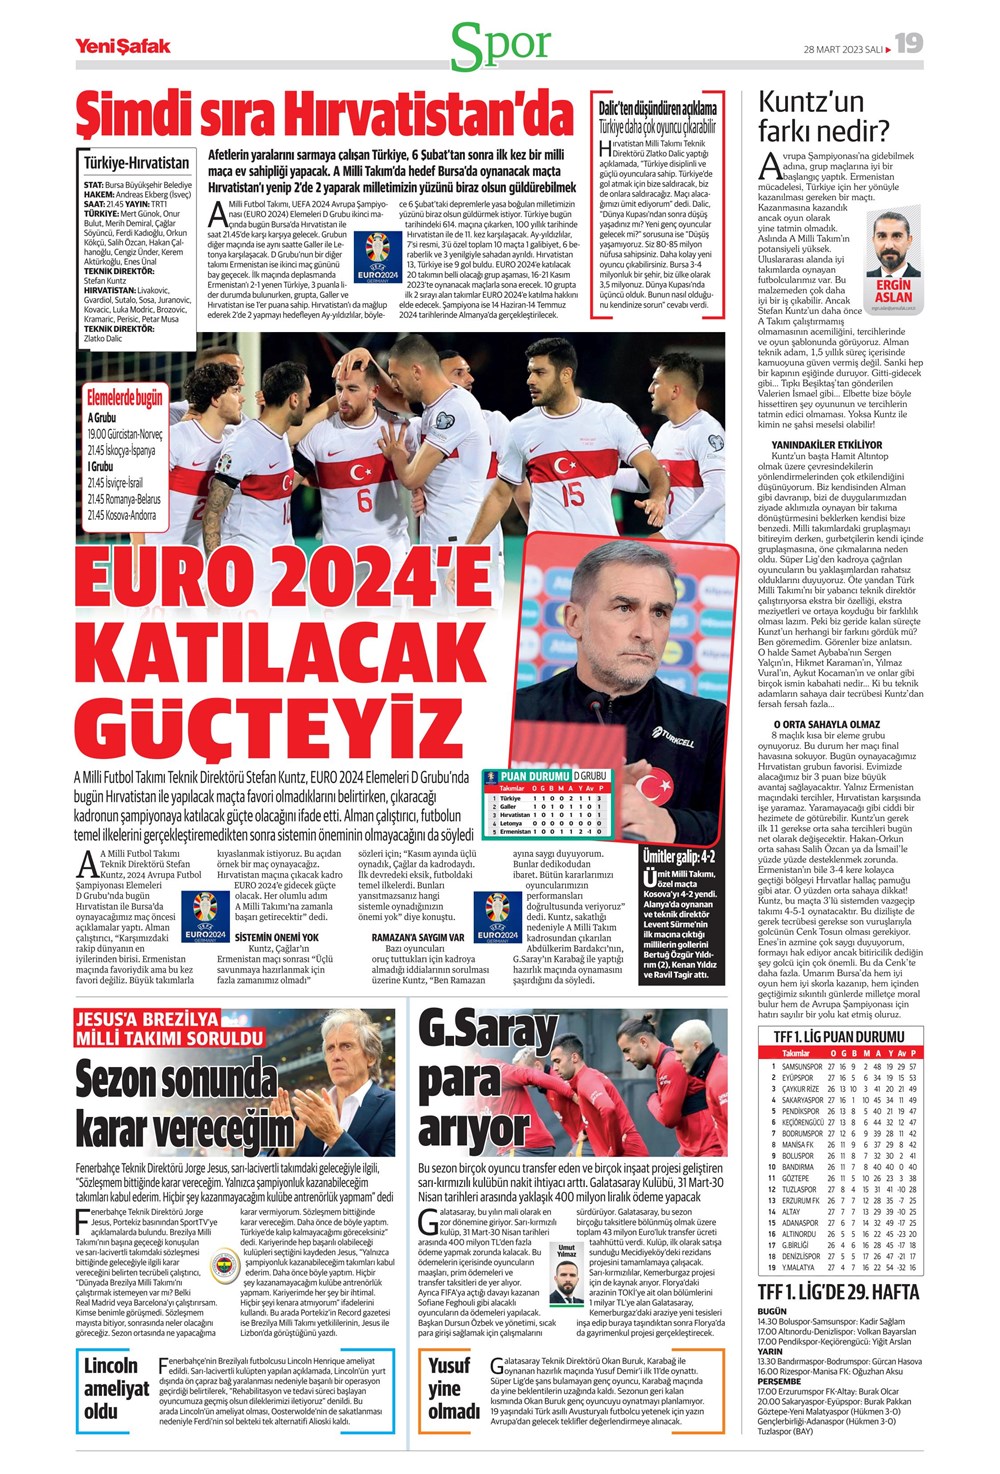 "Vurduğumuz gol olsun" - Sporun manşetleri - 35. Foto